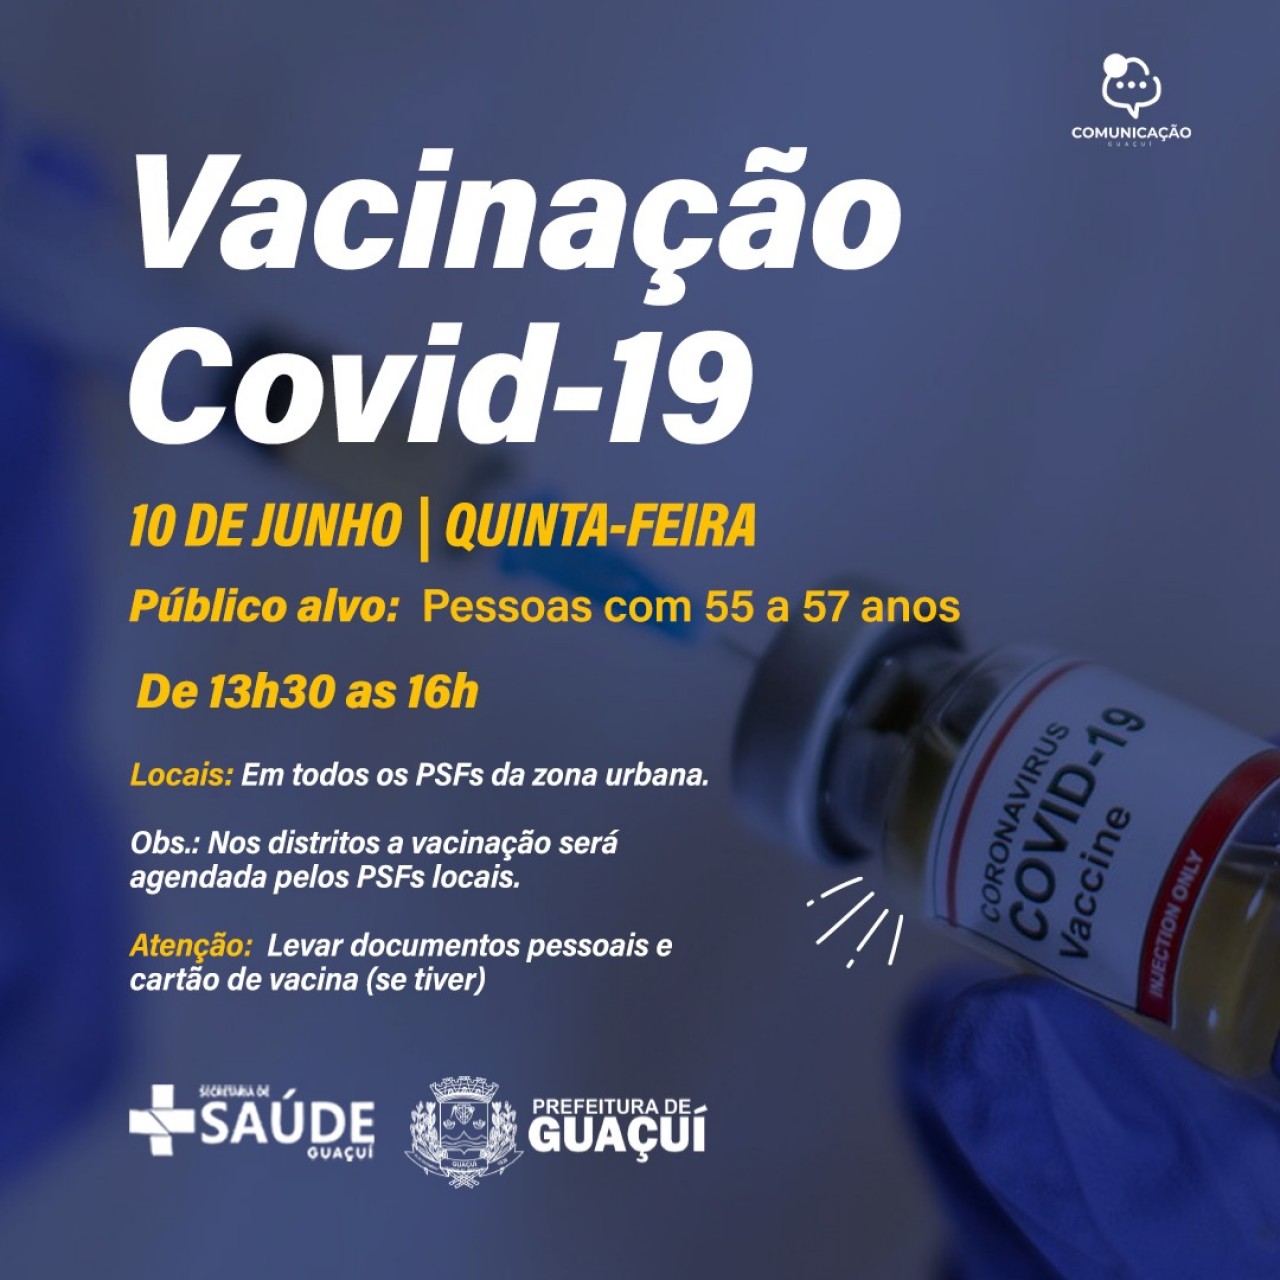 Vacinação Covid-19 para pessoas de 55 a 57 anos inicia hoje (10)